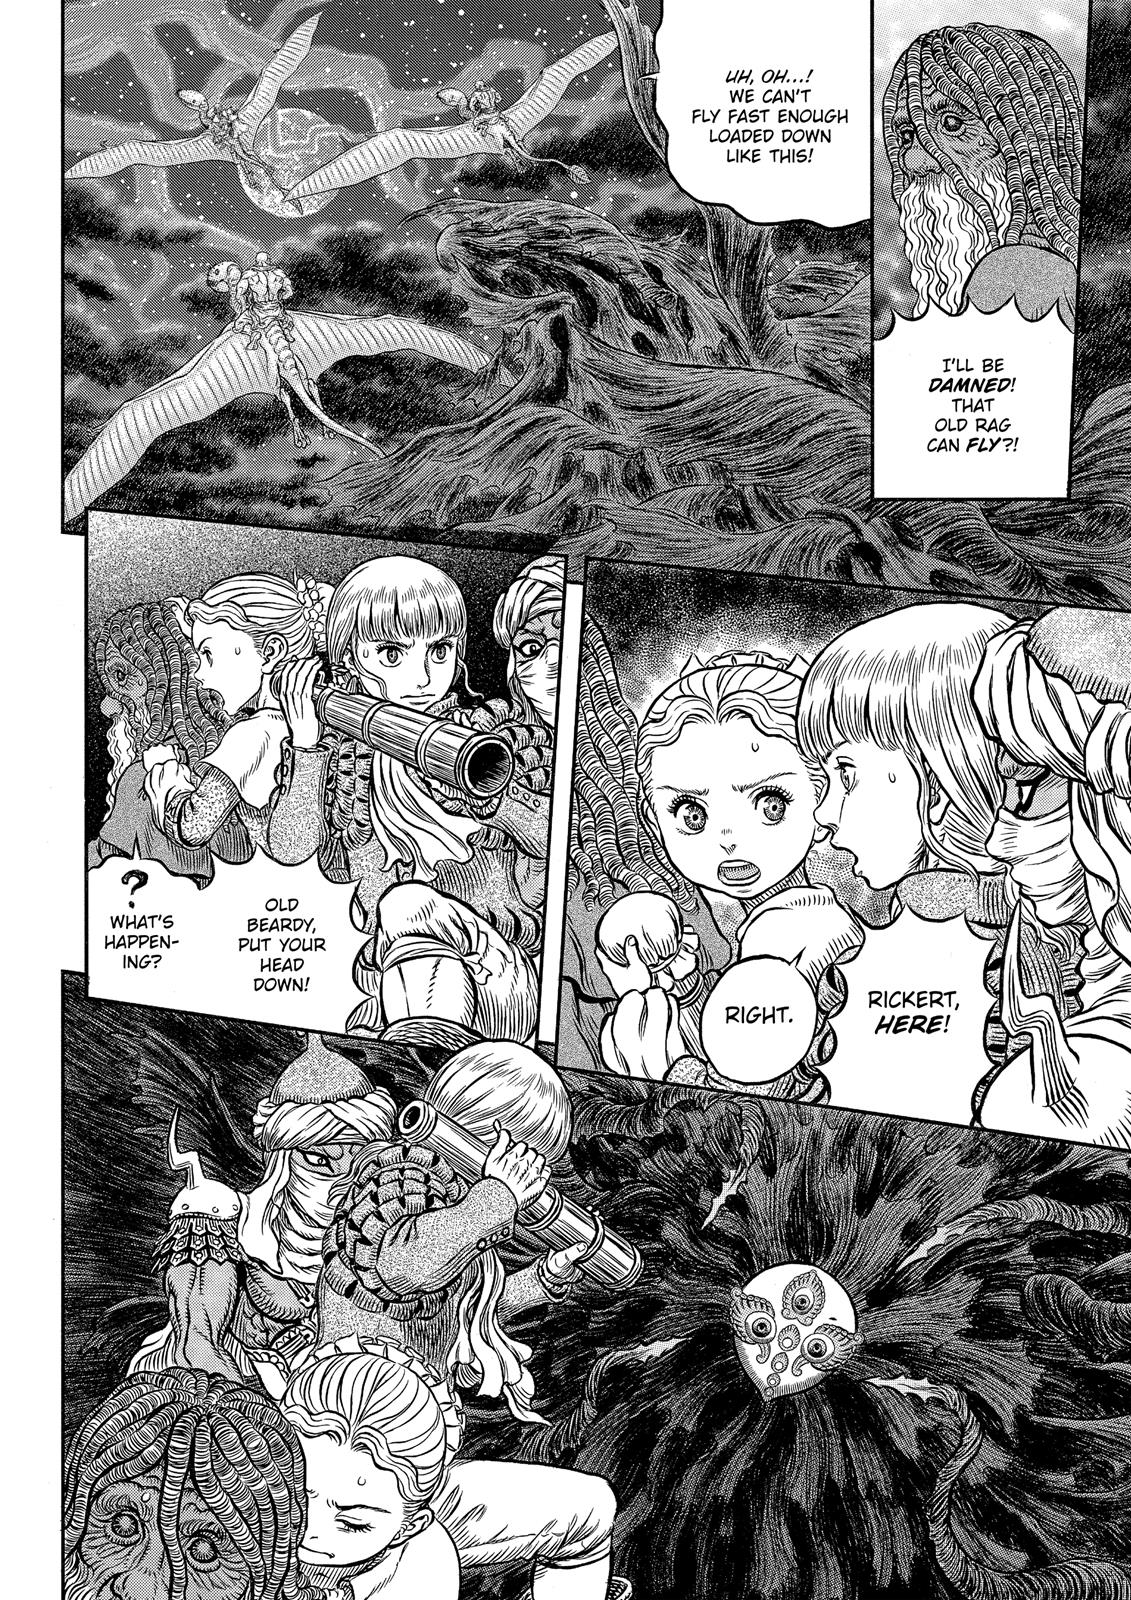 Berserk Manga Chapter 341 image 17